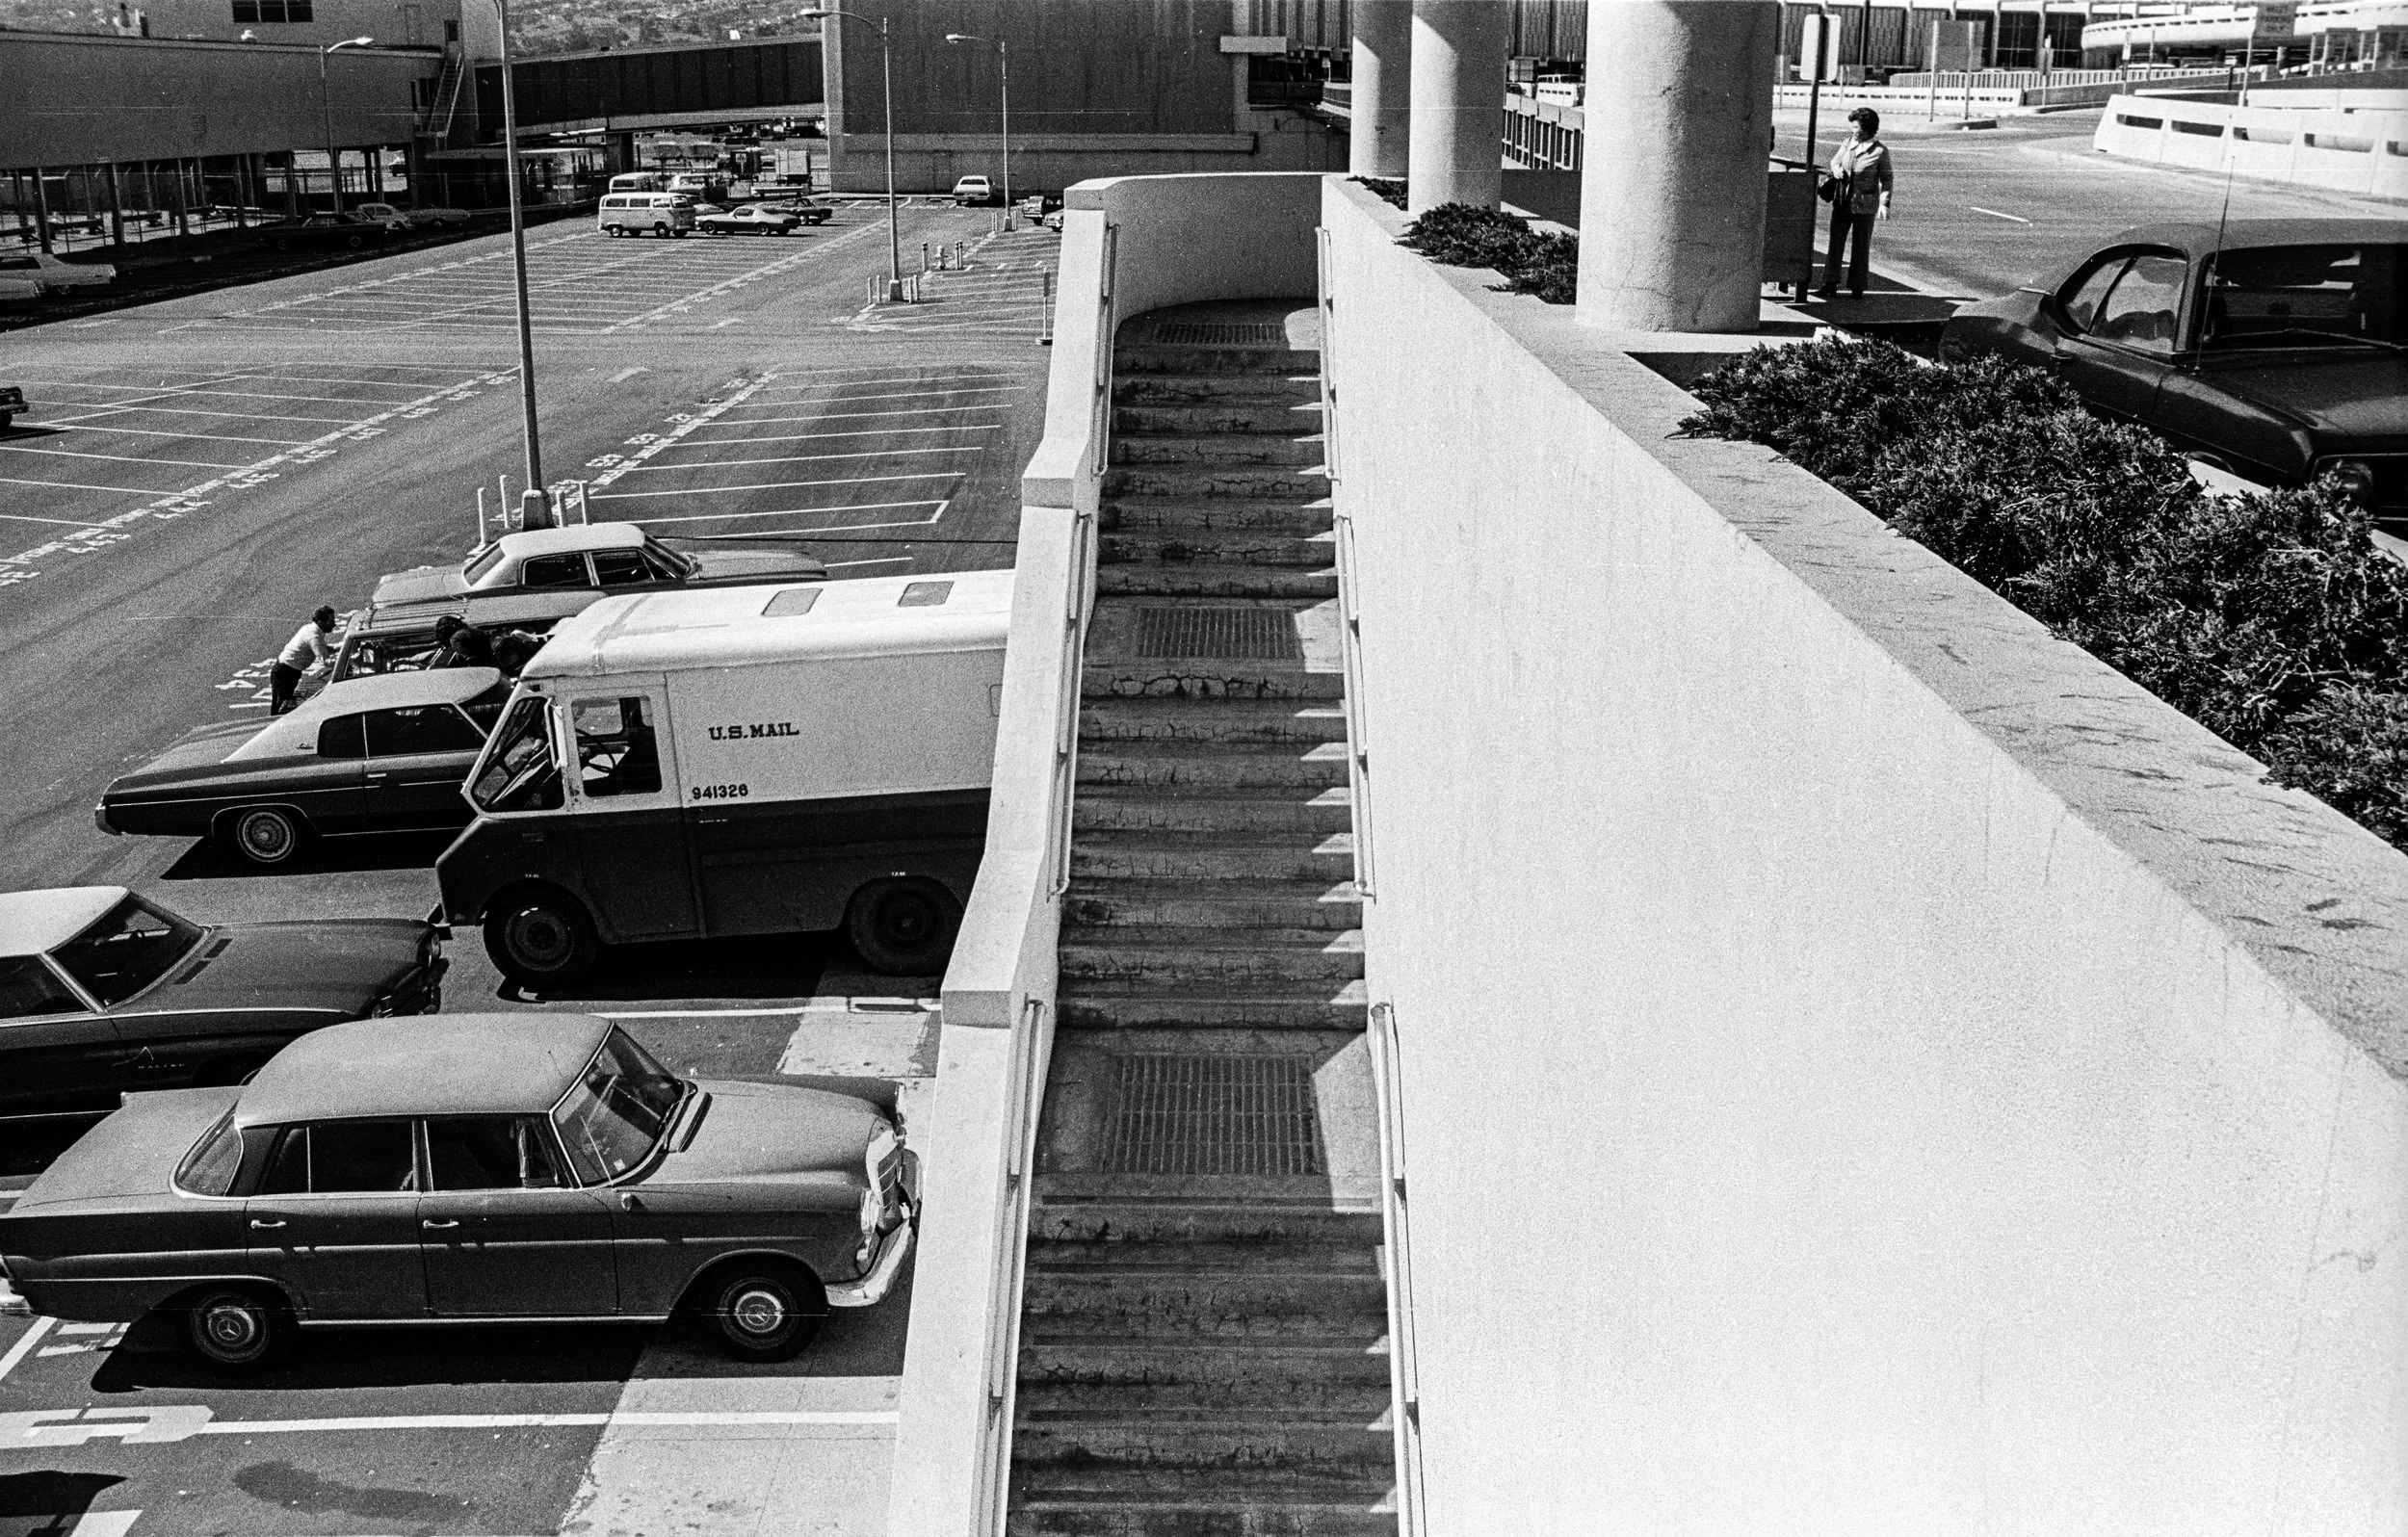   San Francisco Airport, 1974  